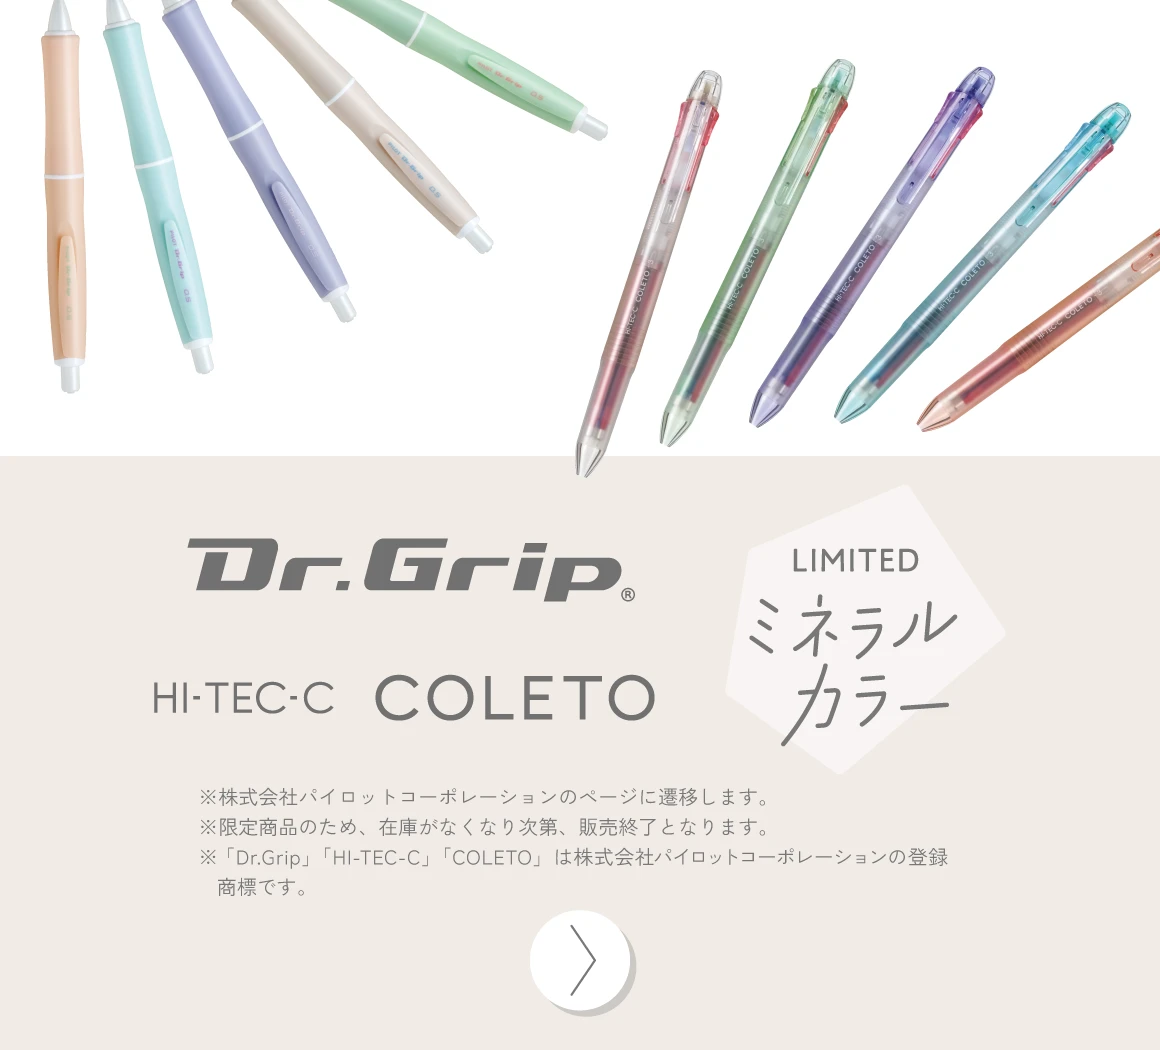 Dr.Grip、HI-TEC-C COLETO ミネラルカラー